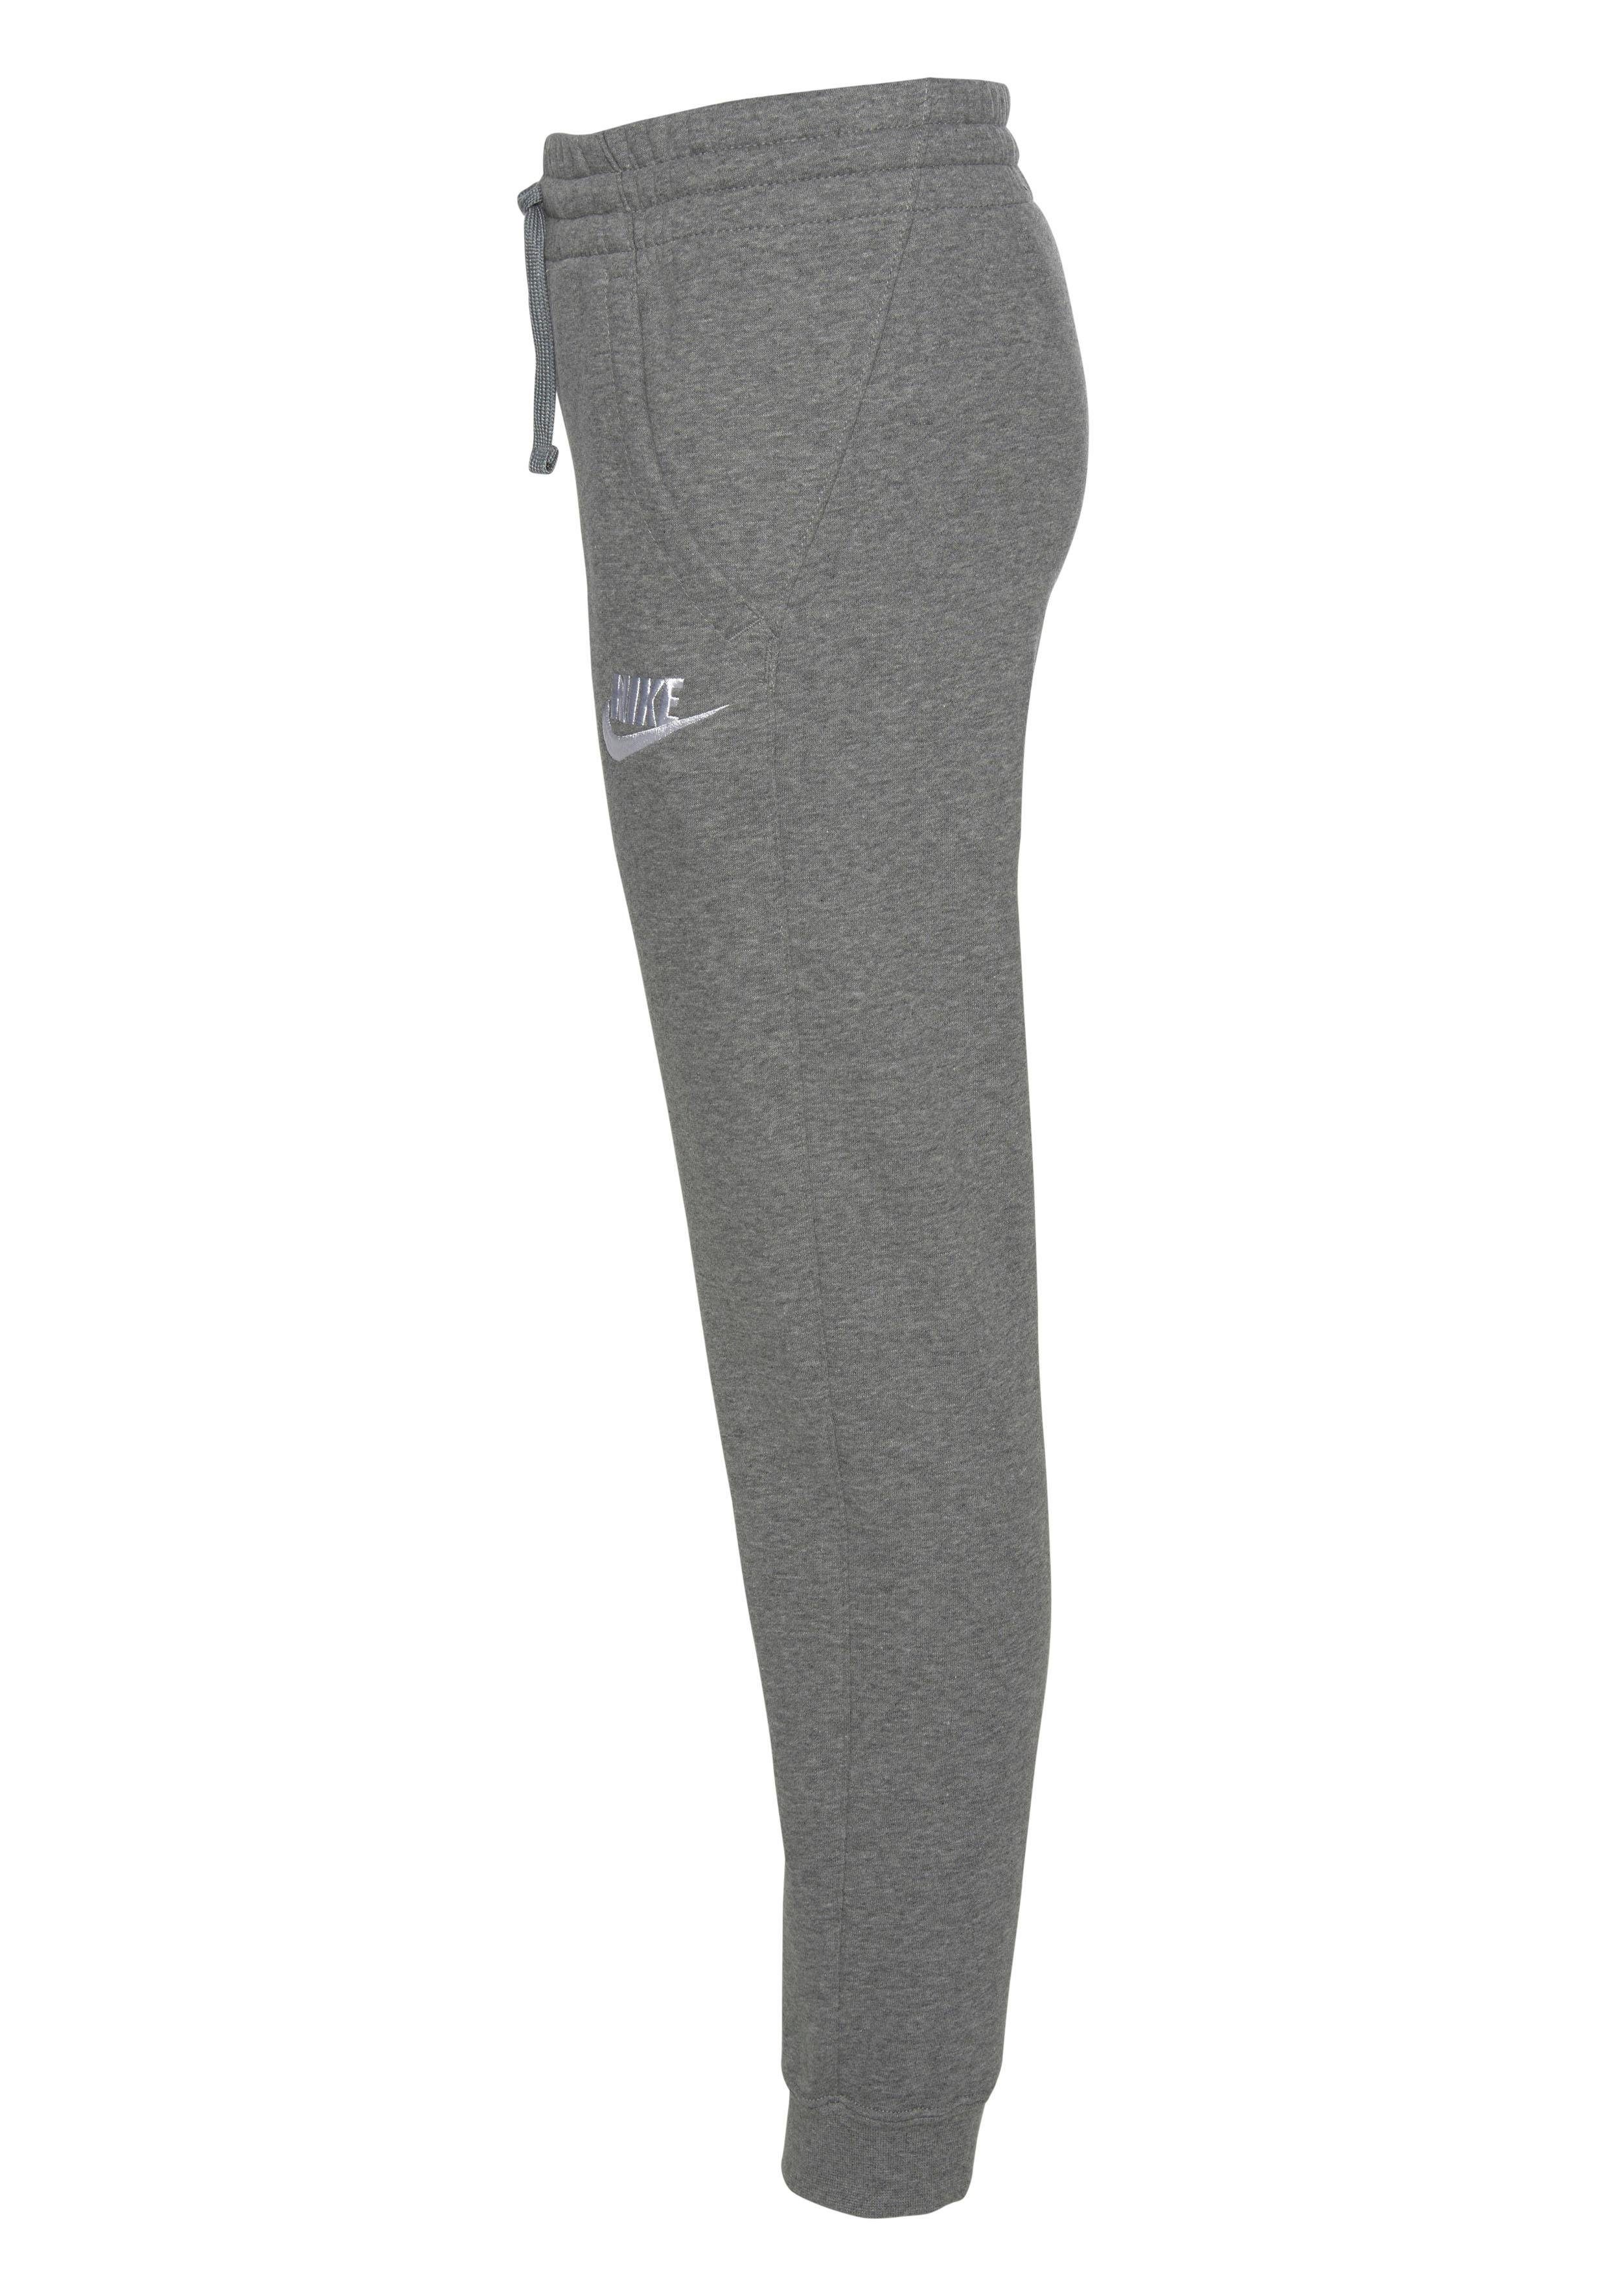 FLEECE CLUB Sportswear JOGGER Nike grau-meliert NSW Jogginghose B PANT